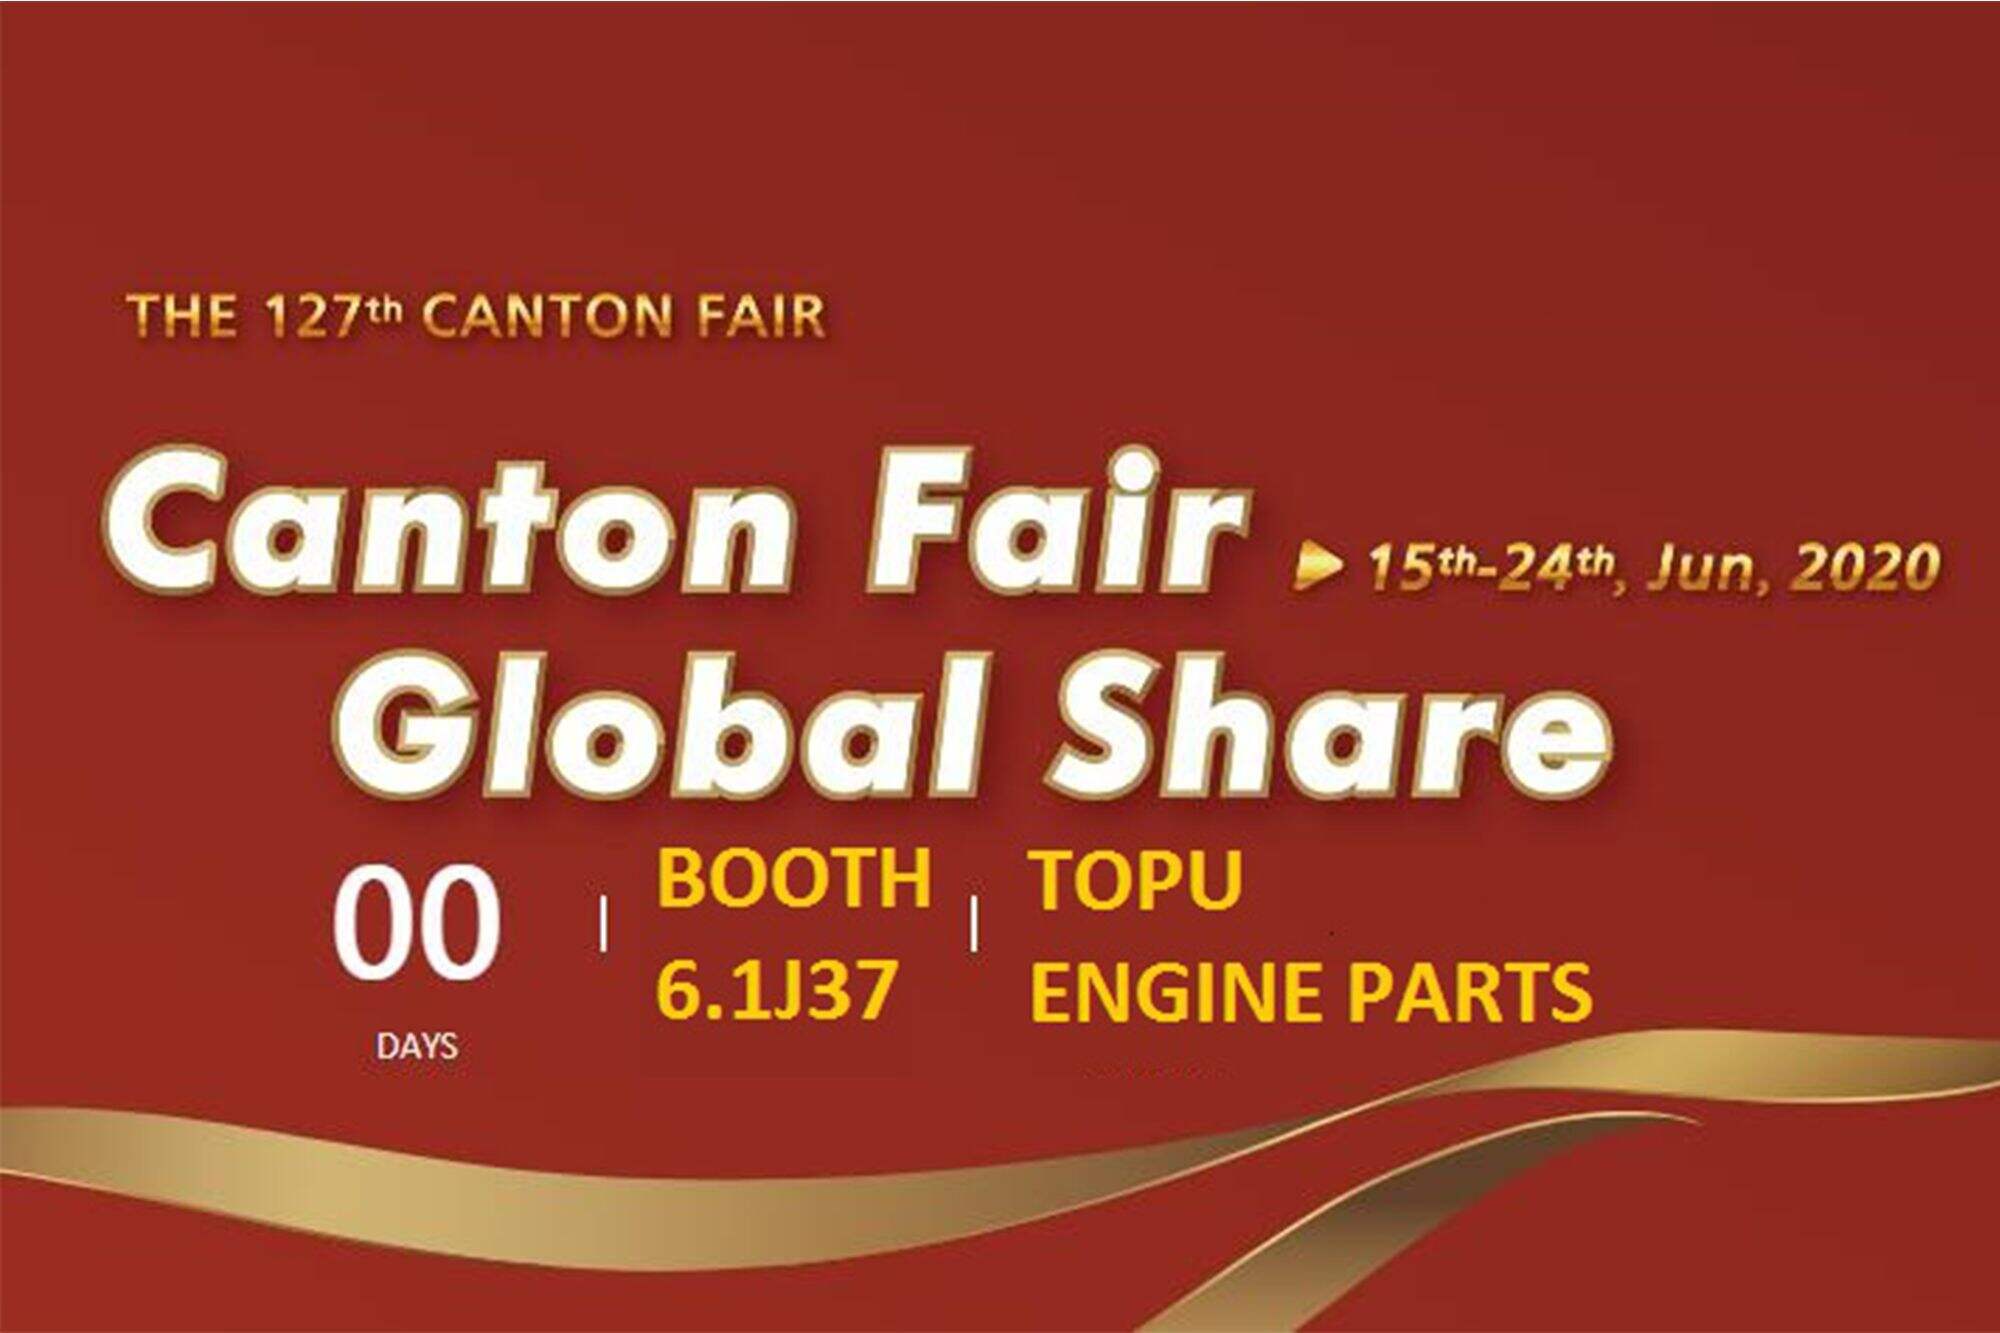 E-Canton fair Booth No. 6.1J37